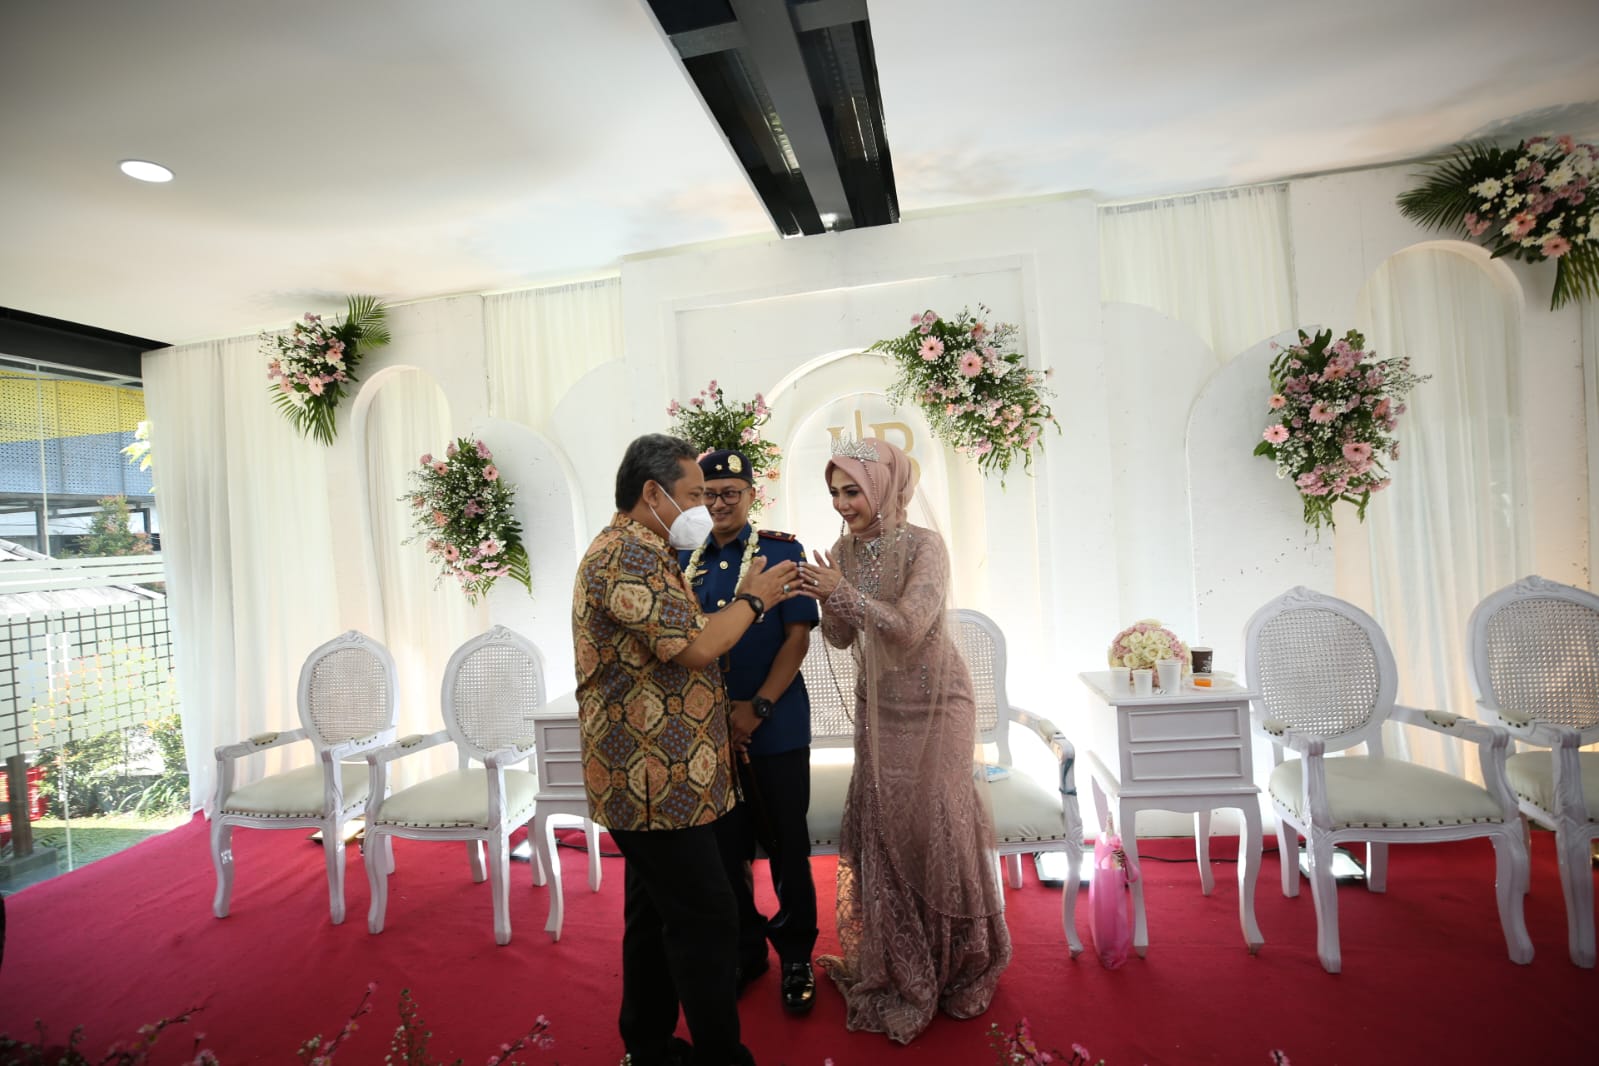 Iis dan Budi Jadi Klien Pertama Nikah di Mal Pelayanan Publik Kota Bandung